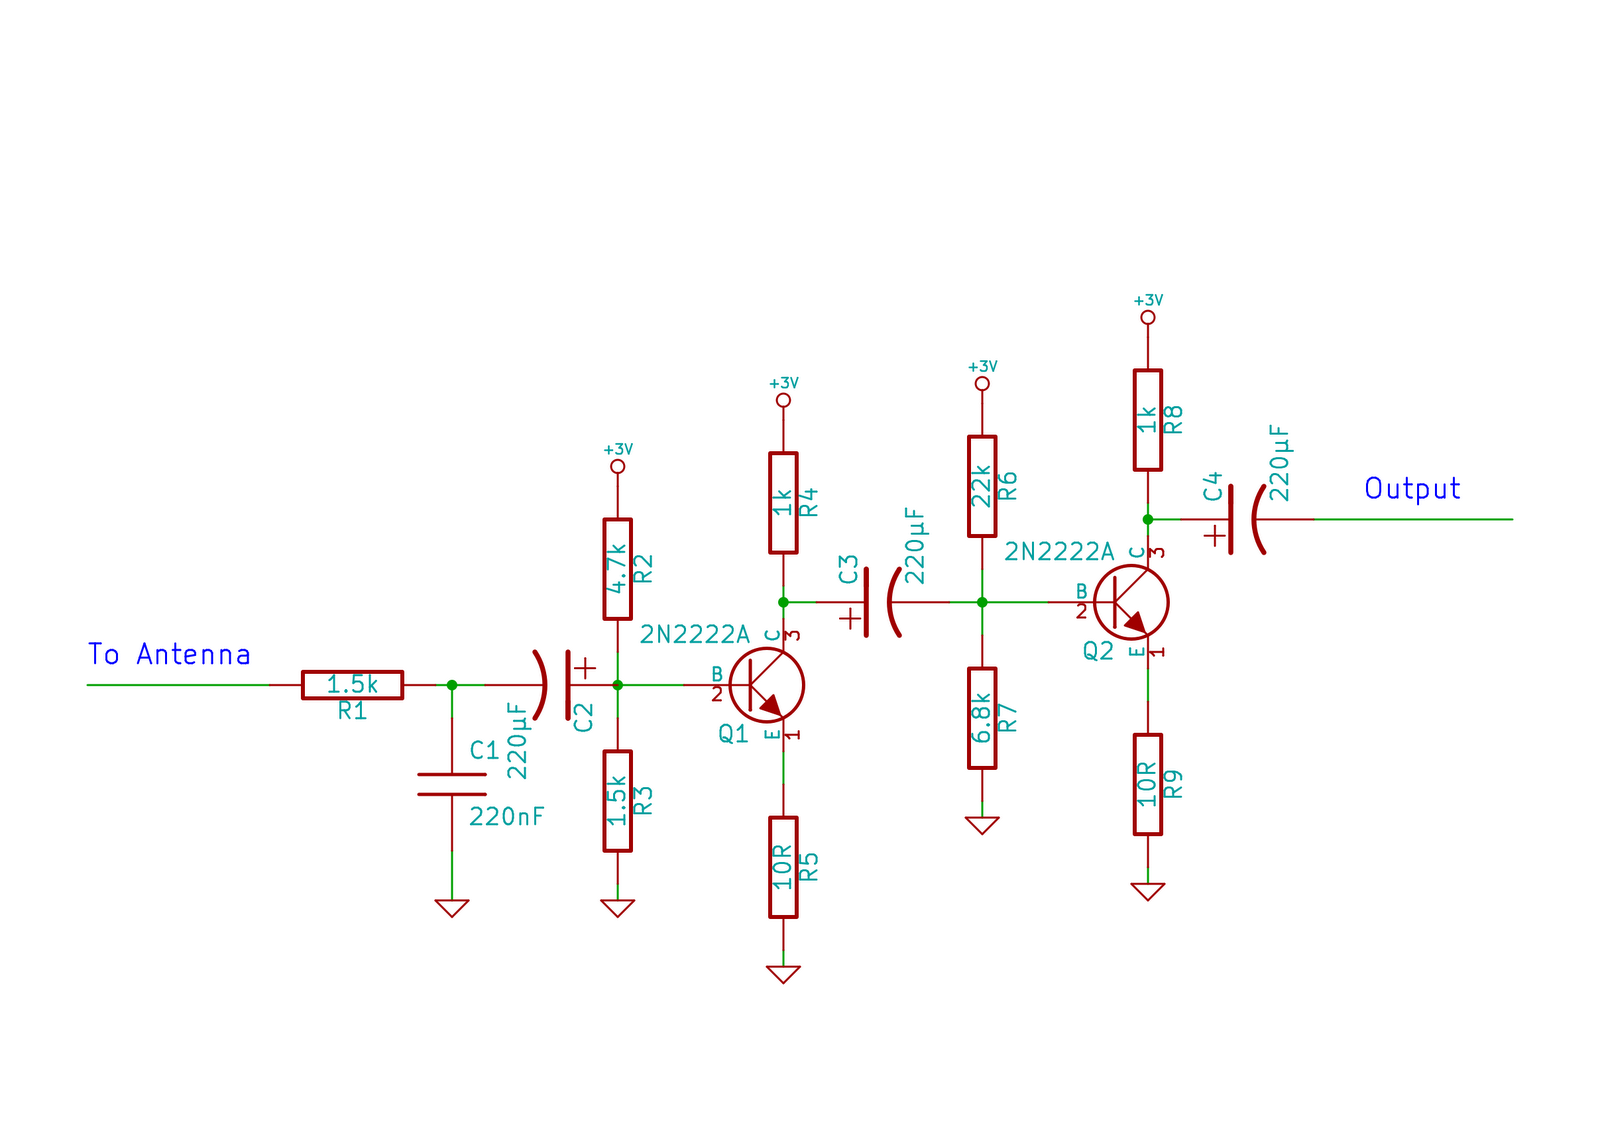 Original circuit schematic